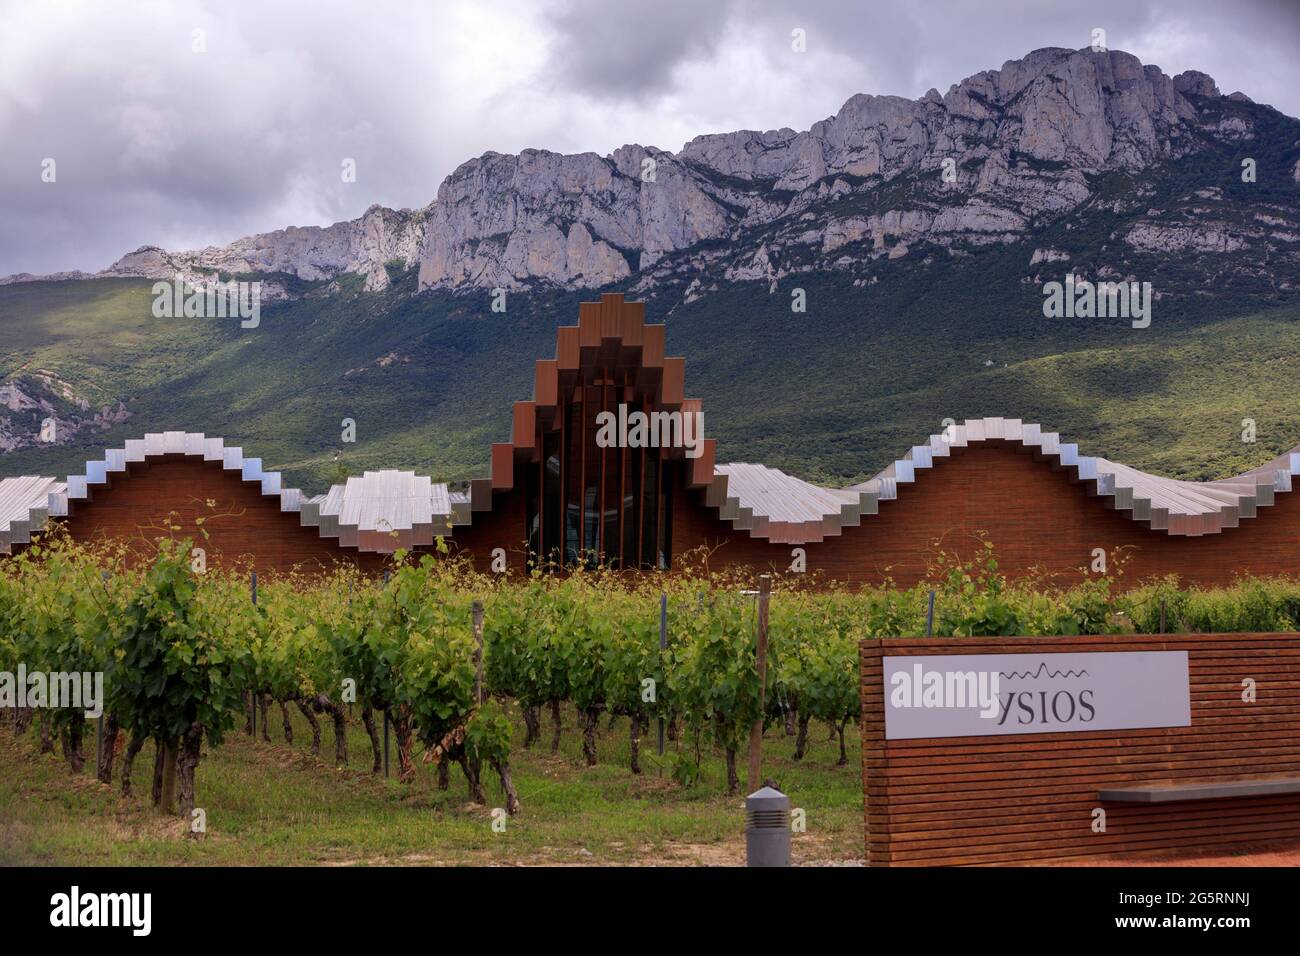 Ysios Bodega Design von dem spanischen Architekten Santiago Calatrava im Dorf LaGuardia in der Region von La Roja. Spanien Stockfoto